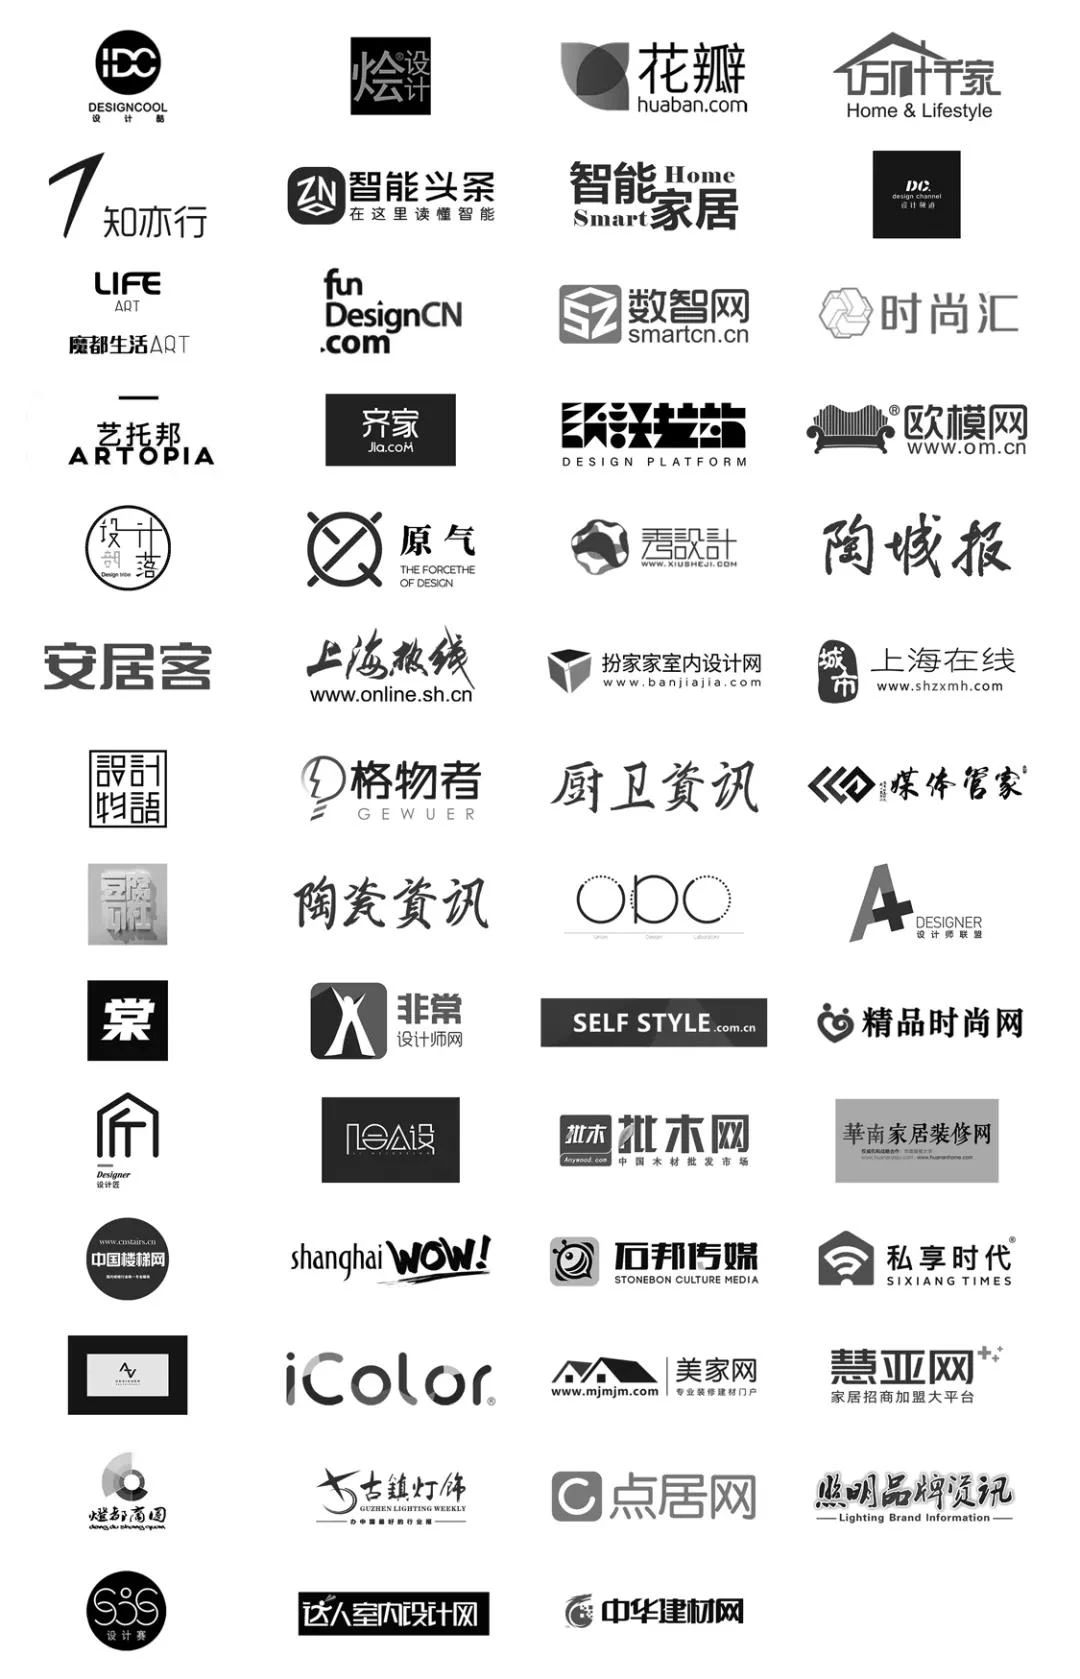  2021上海国际设计周IP攻略指南